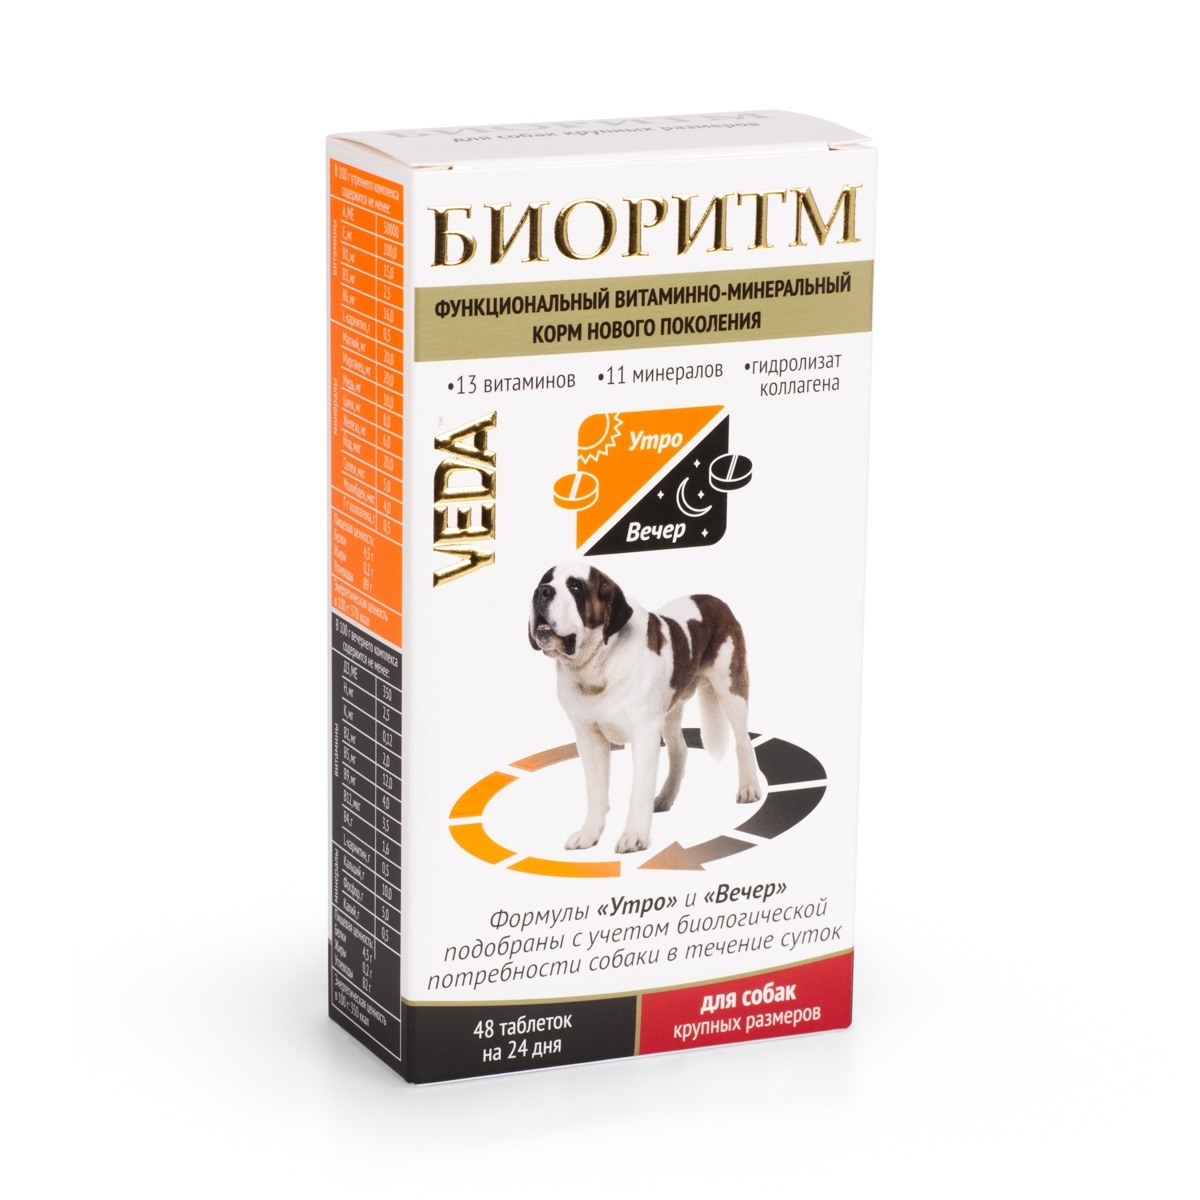 Веда Веда биоритм витамины для собак крупных пород (20 г) цена и фото